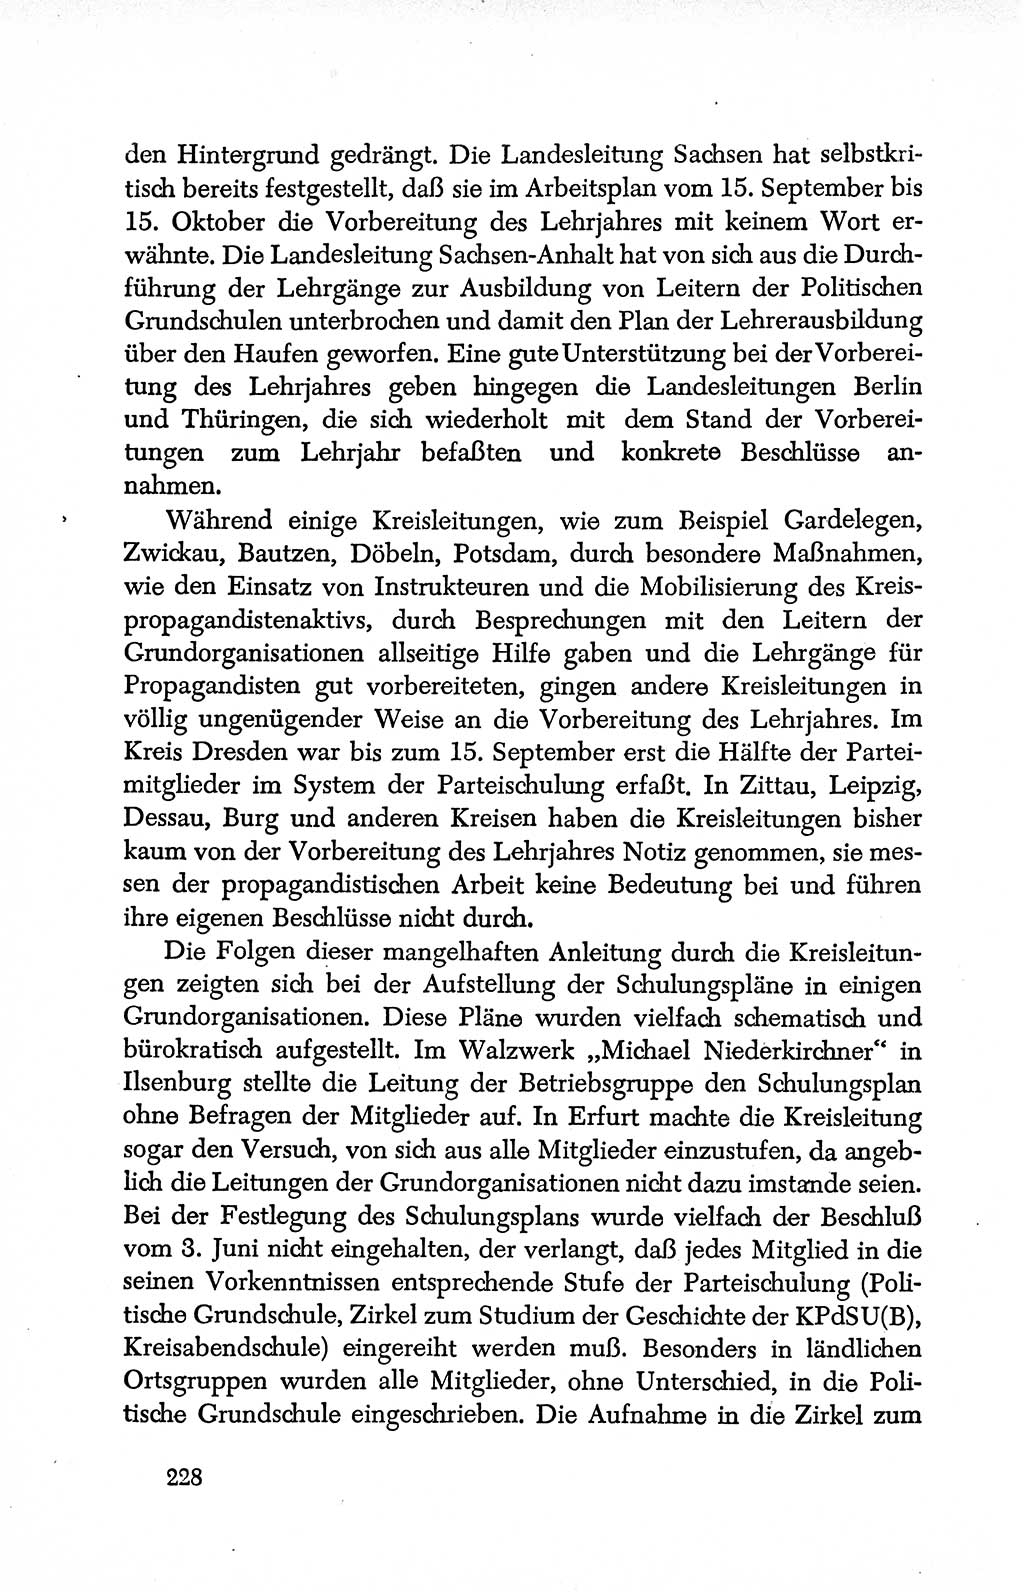 Dokumente der Sozialistischen Einheitspartei Deutschlands (SED) [Deutsche Demokratische Republik (DDR)] 1950-1952, Seite 228 (Dok. SED DDR 1950-1952, S. 228)